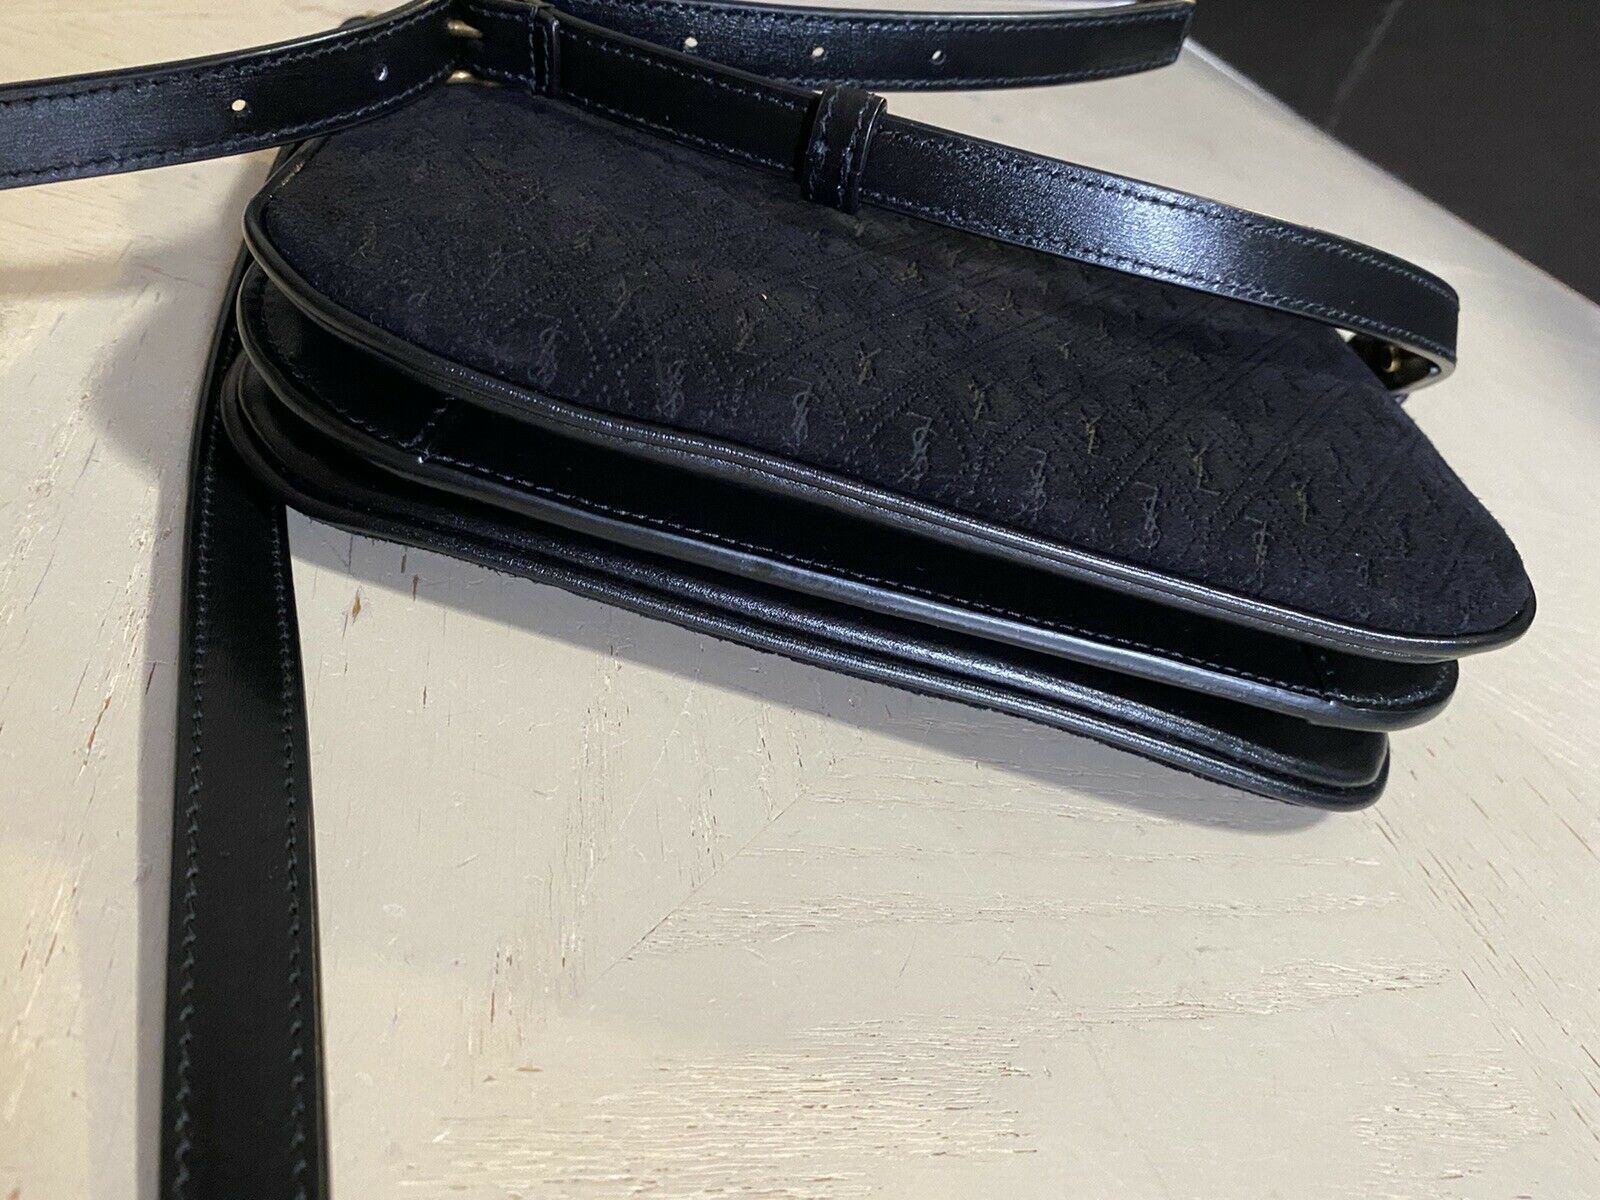 New $1850 Saint Laurent Leather/Suede YSL Crossbody Shoulder Bag Black 595541